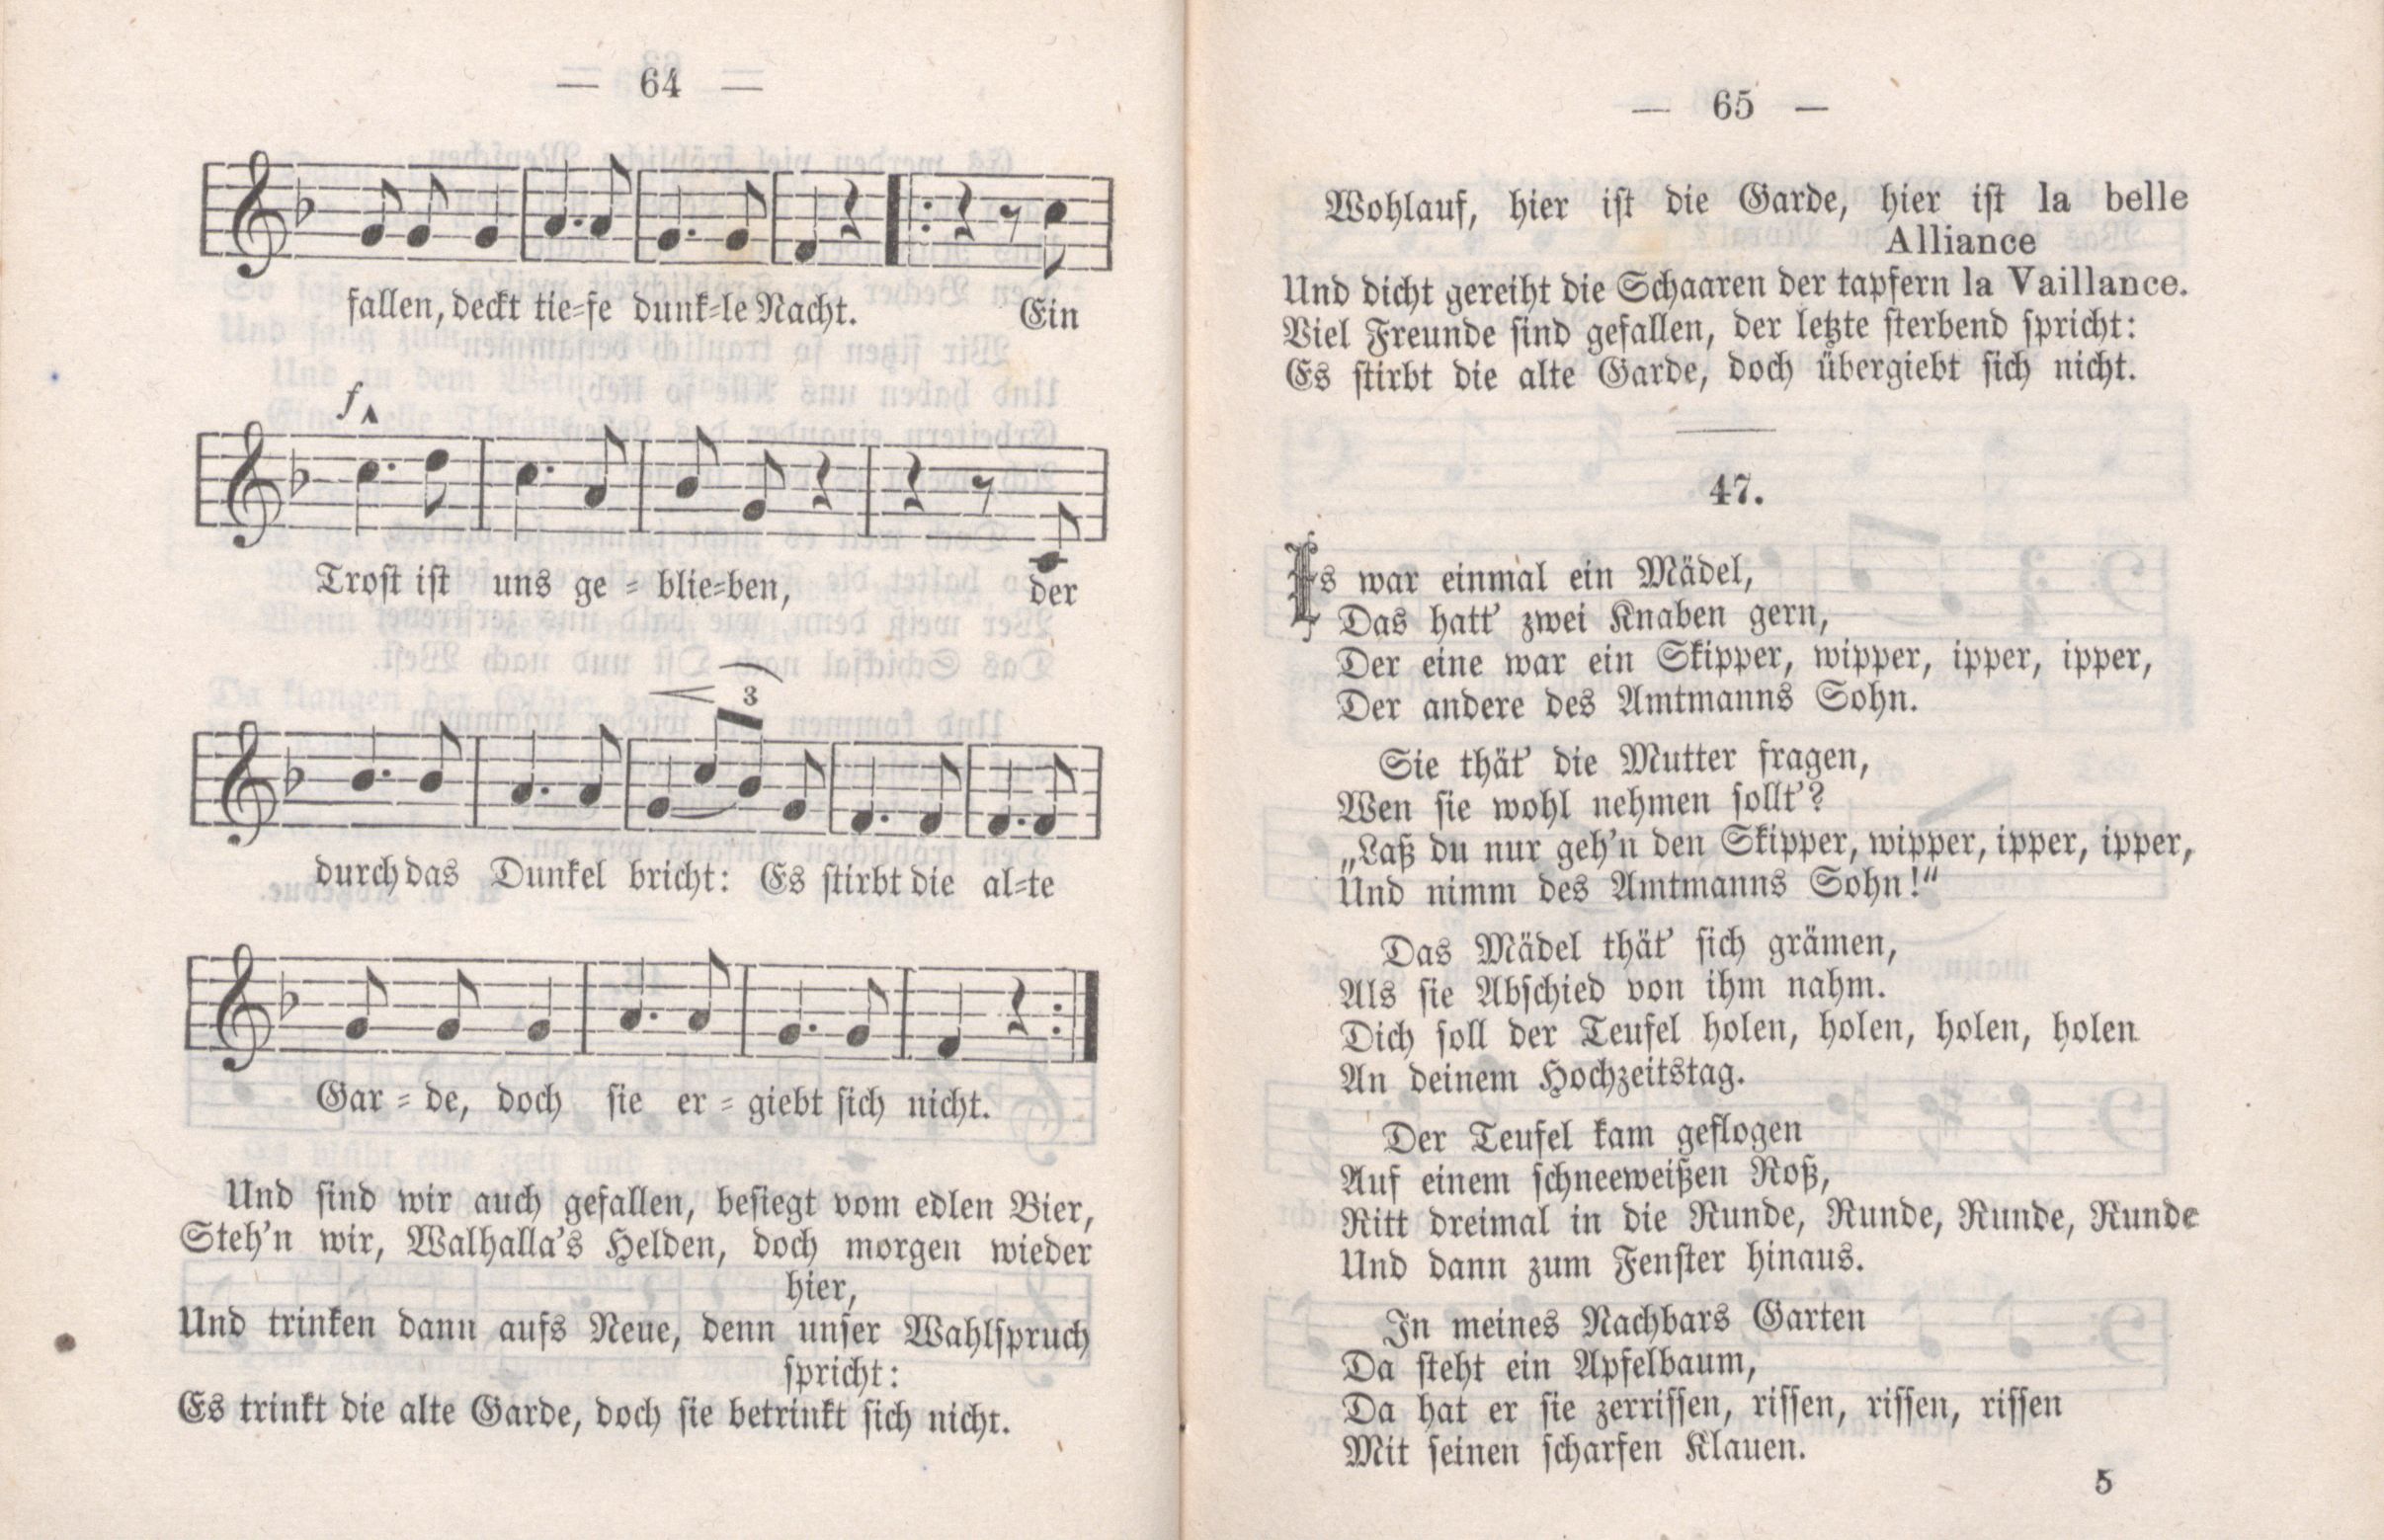 Dorpater Burschenliederbuch (1882) | 38. (64-65) Main body of text